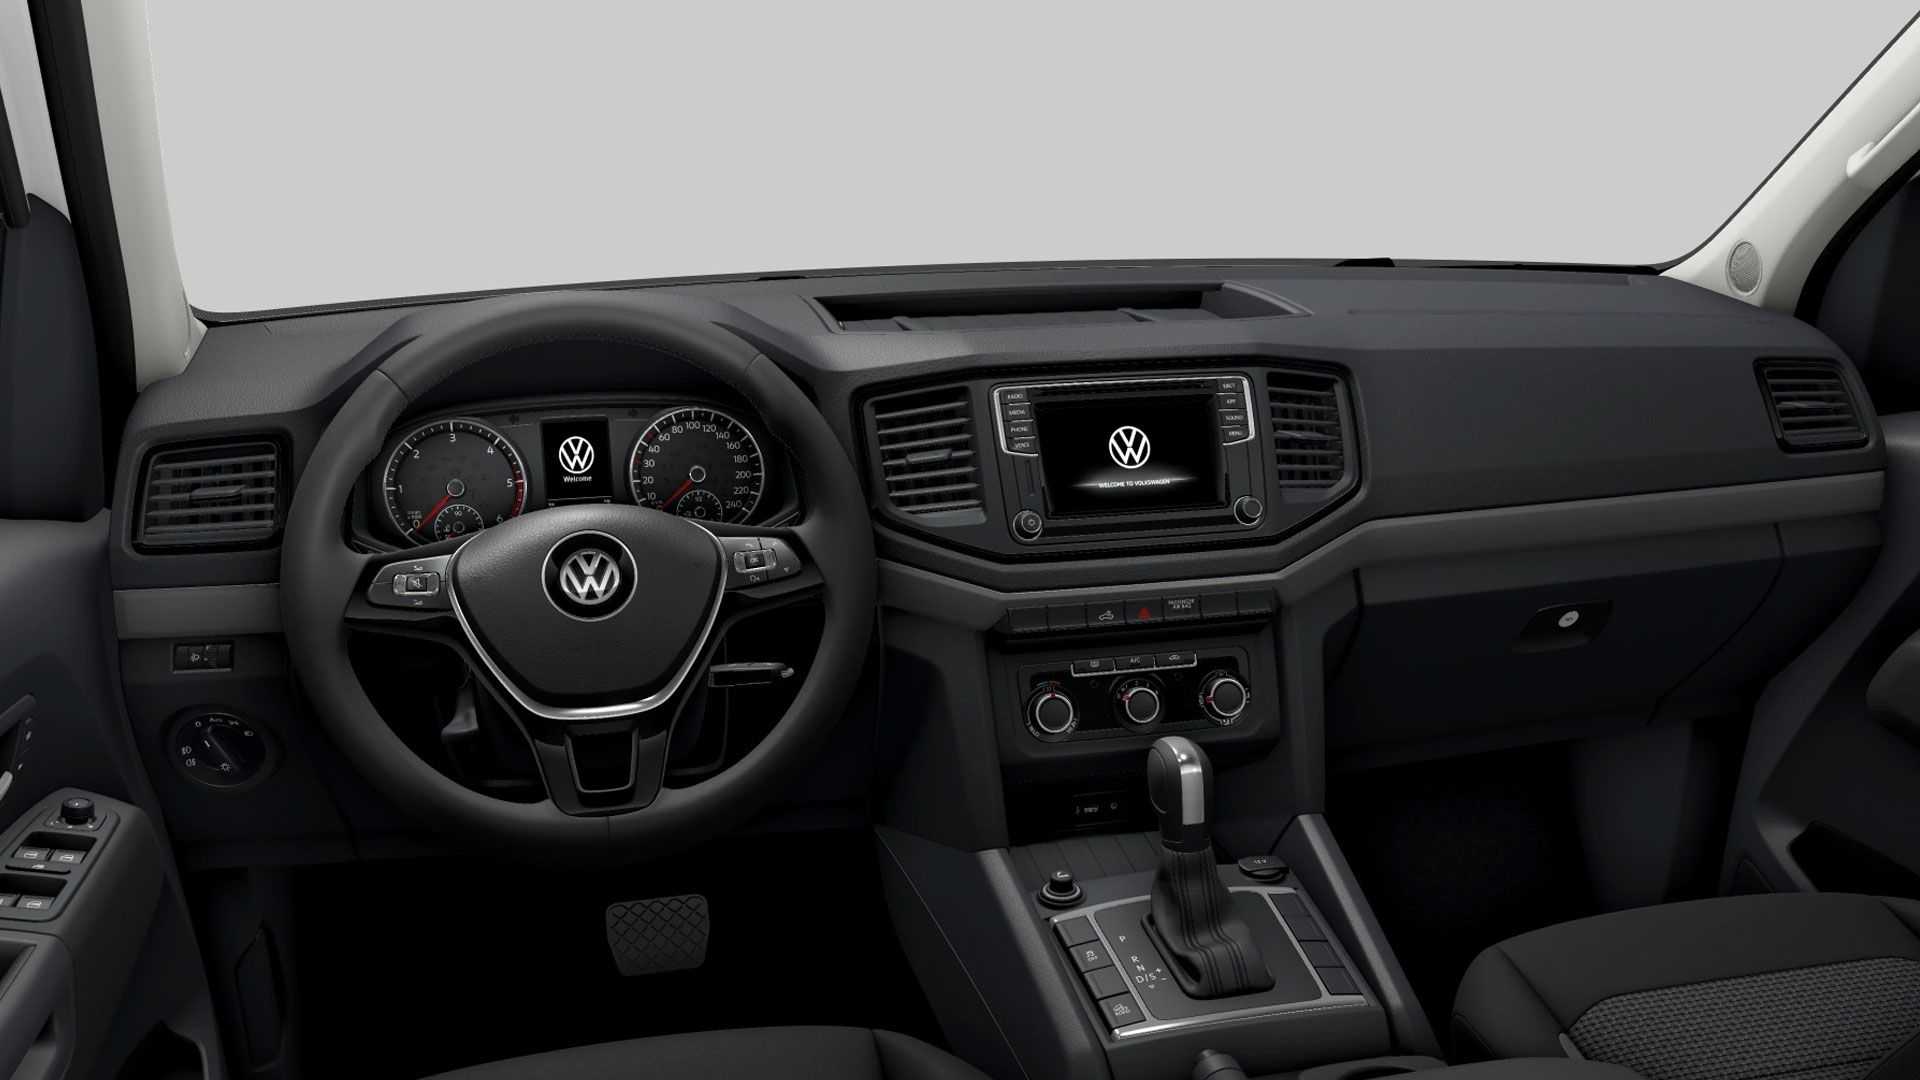 VW Amarok Comfortline V6. Foto: Divulgação